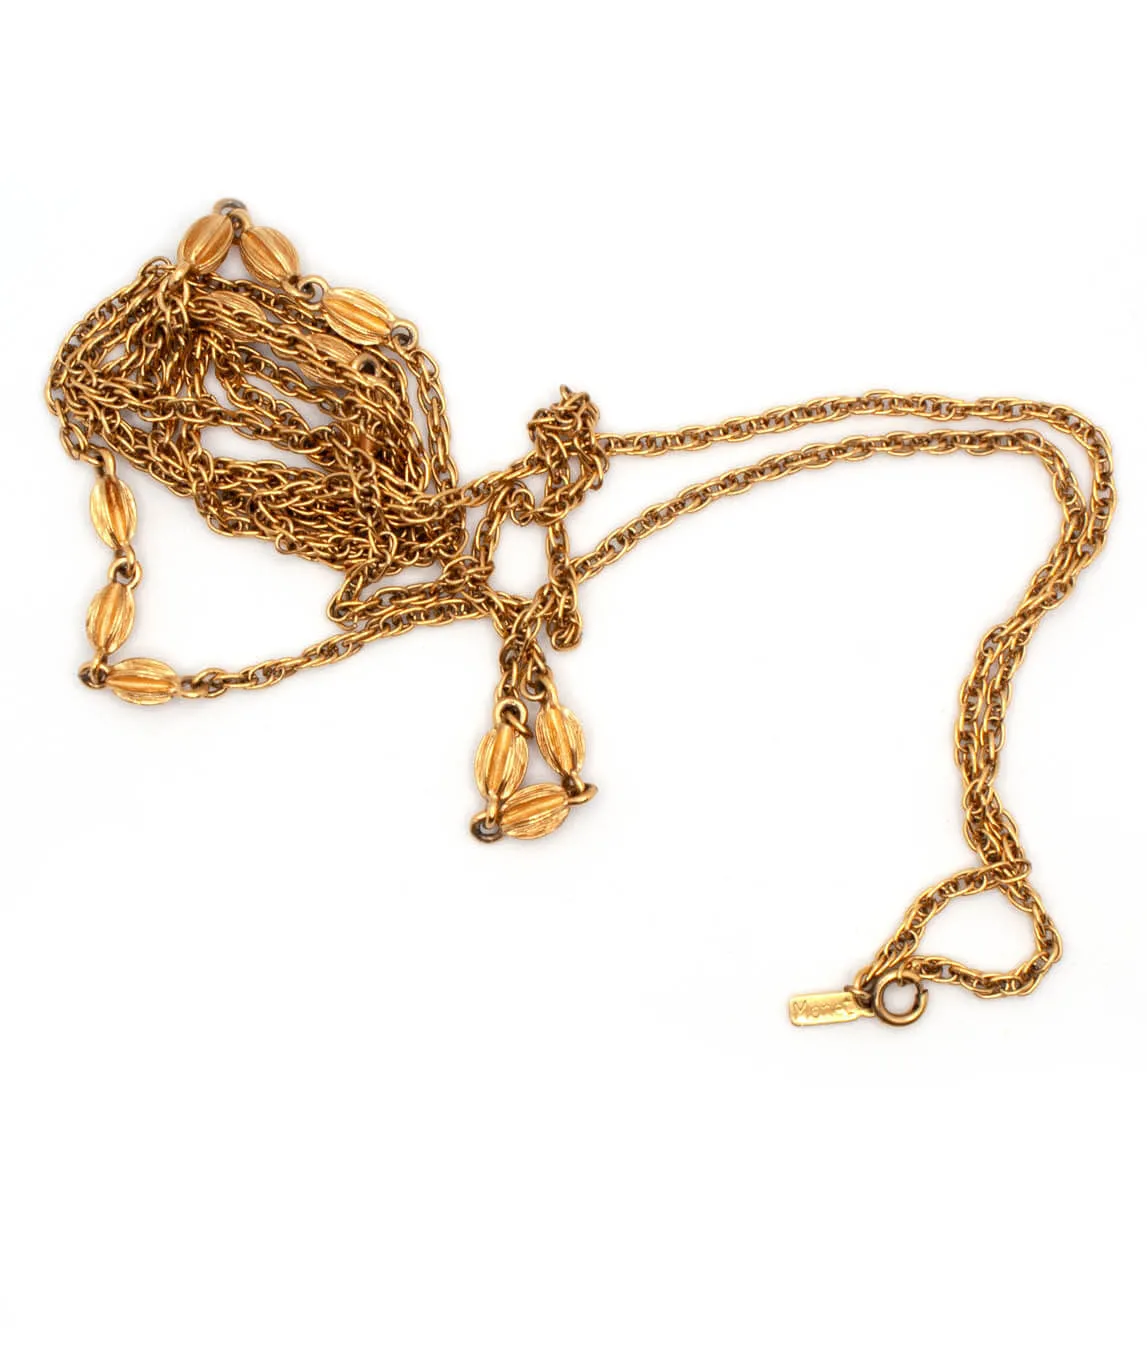 Vintage Monet Long Chain Necklace